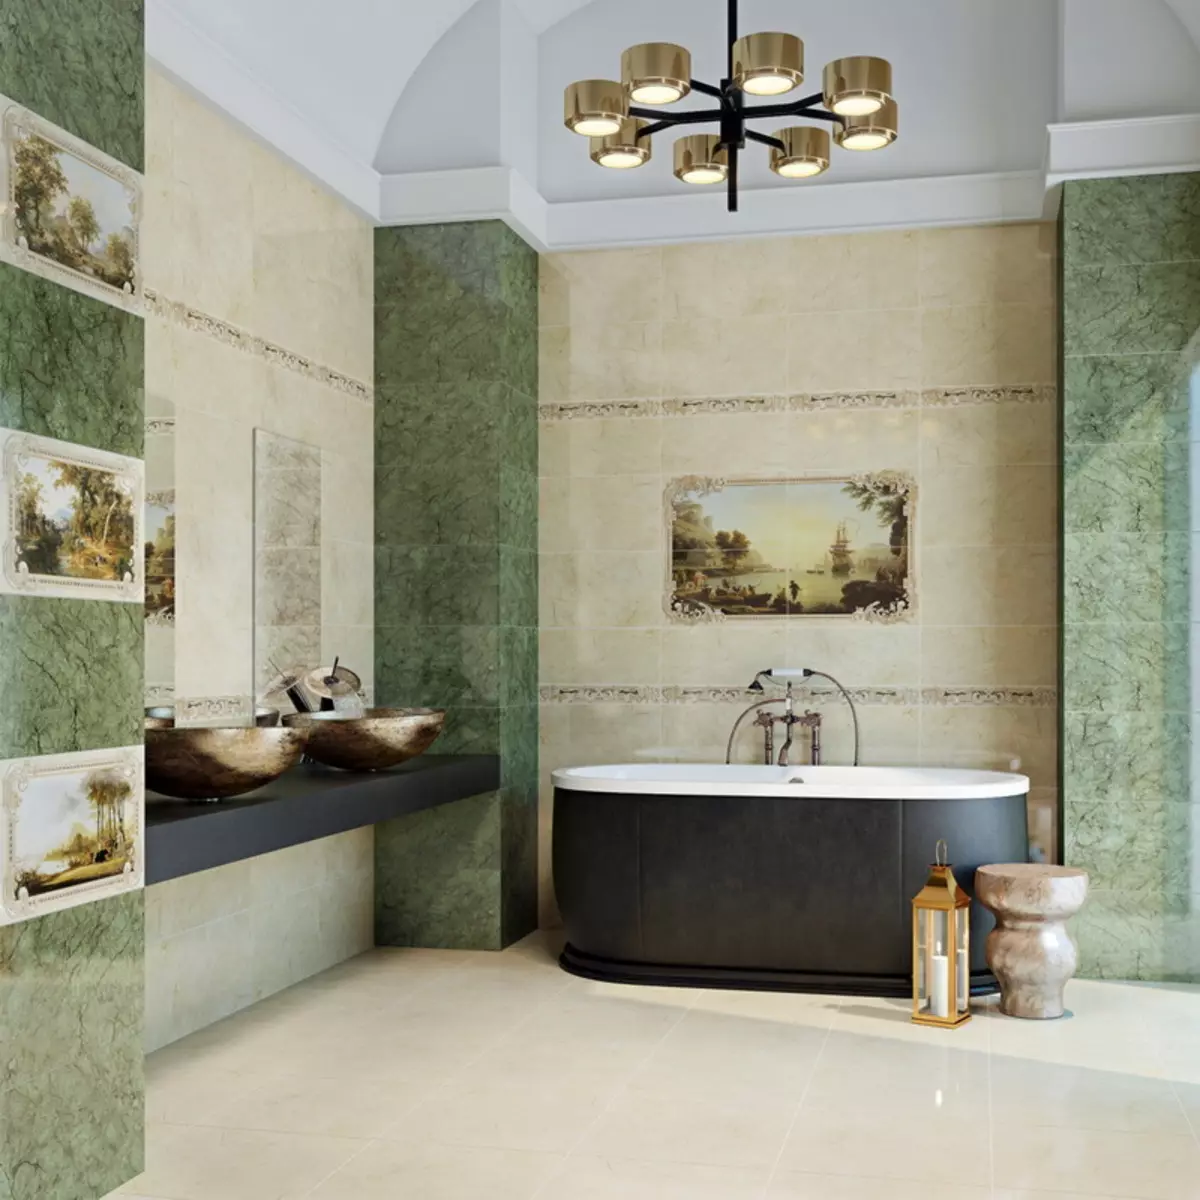 Panell de rajoles al bany (79 fotos): vista general del panell per al bany des de rajoles de ceràmica i mosaics, rajoles i panells de mosaic amb temes marins i altres 21368_28